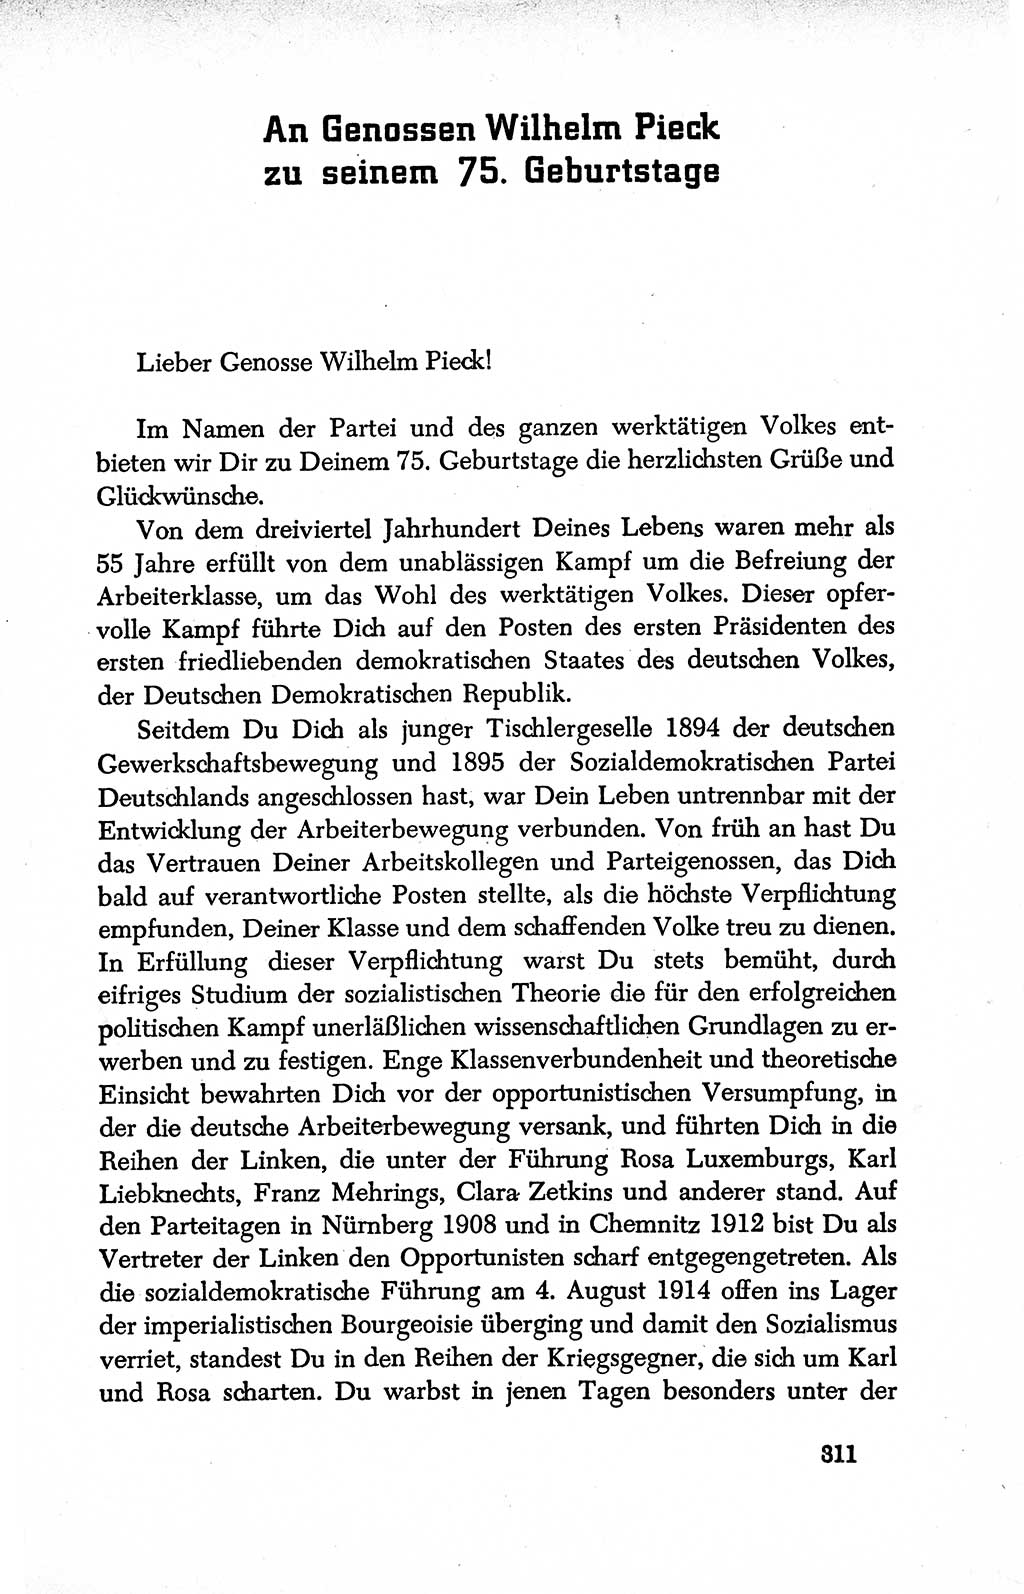 Dokumente der Sozialistischen Einheitspartei Deutschlands (SED) [Deutsche Demokratische Republik (DDR)] 1950-1952, Seite 311 (Dok. SED DDR 1950-1952, S. 311)